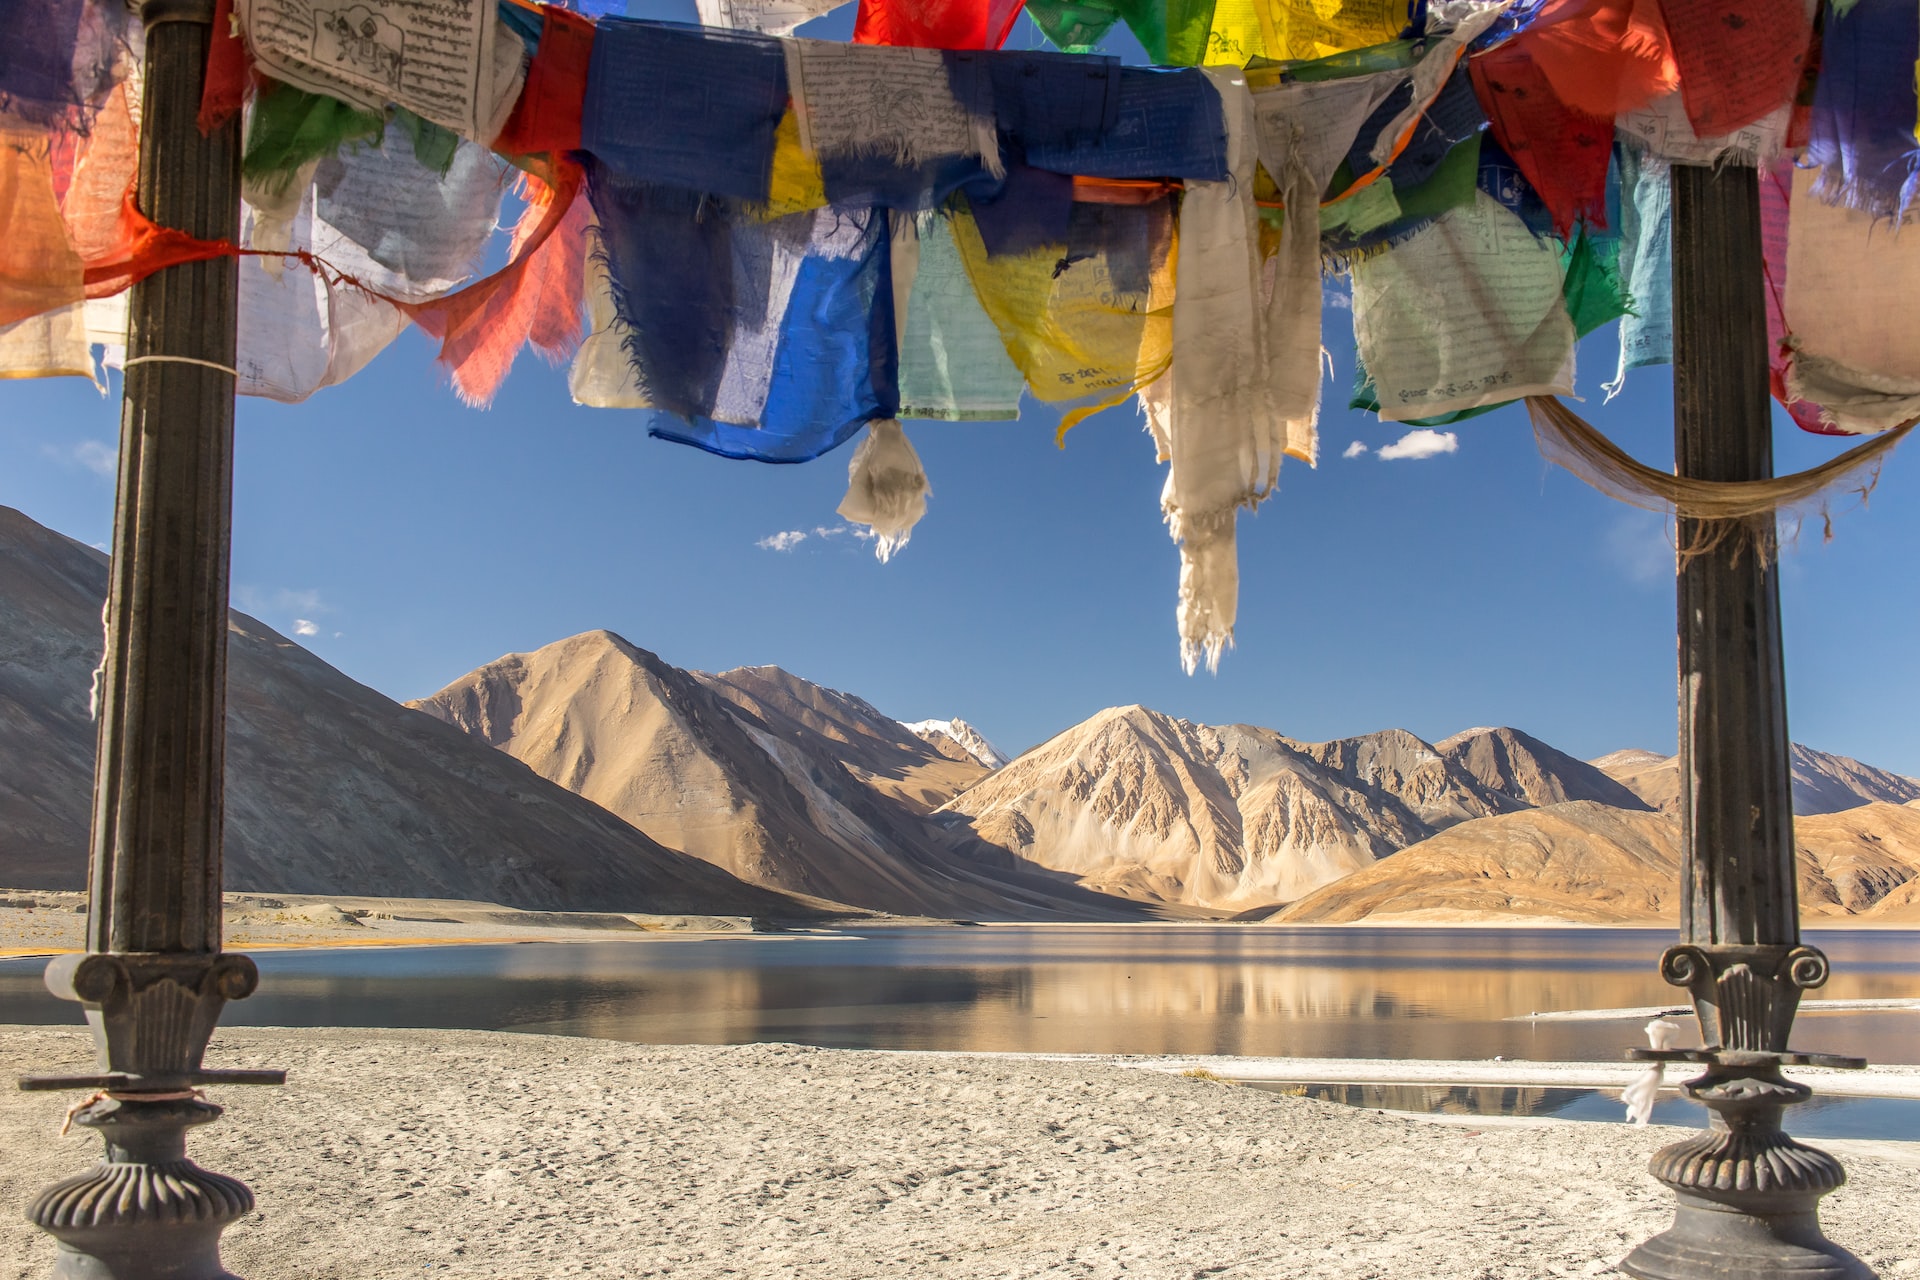 best places in india Ladakh

